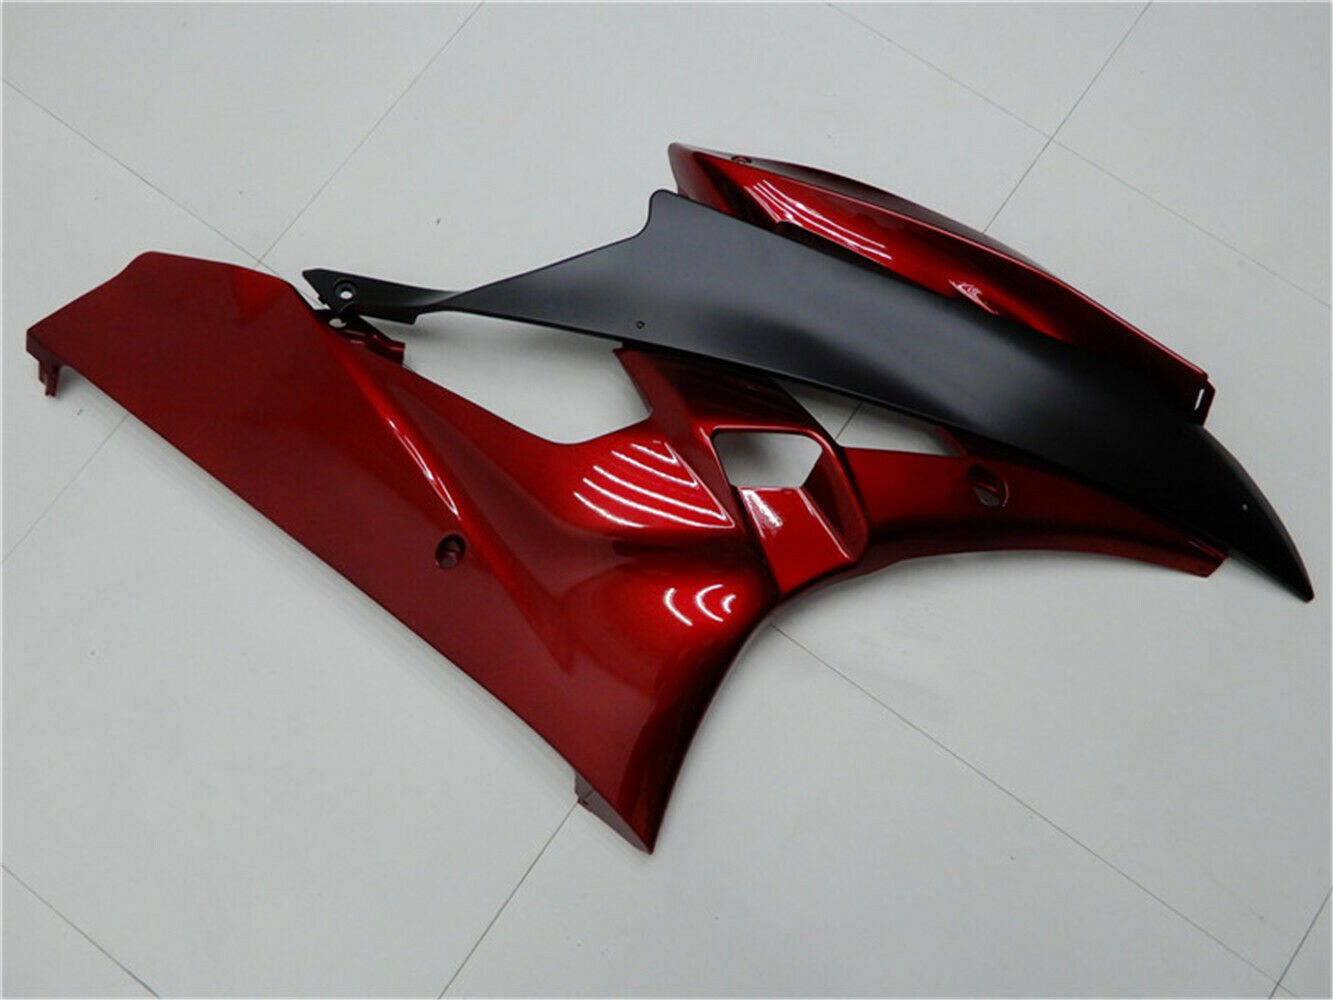 Kit de carenado de plástico de inyección rojo y negro Amotopart para Yamaha 2006 2007 YZF R6 genérico